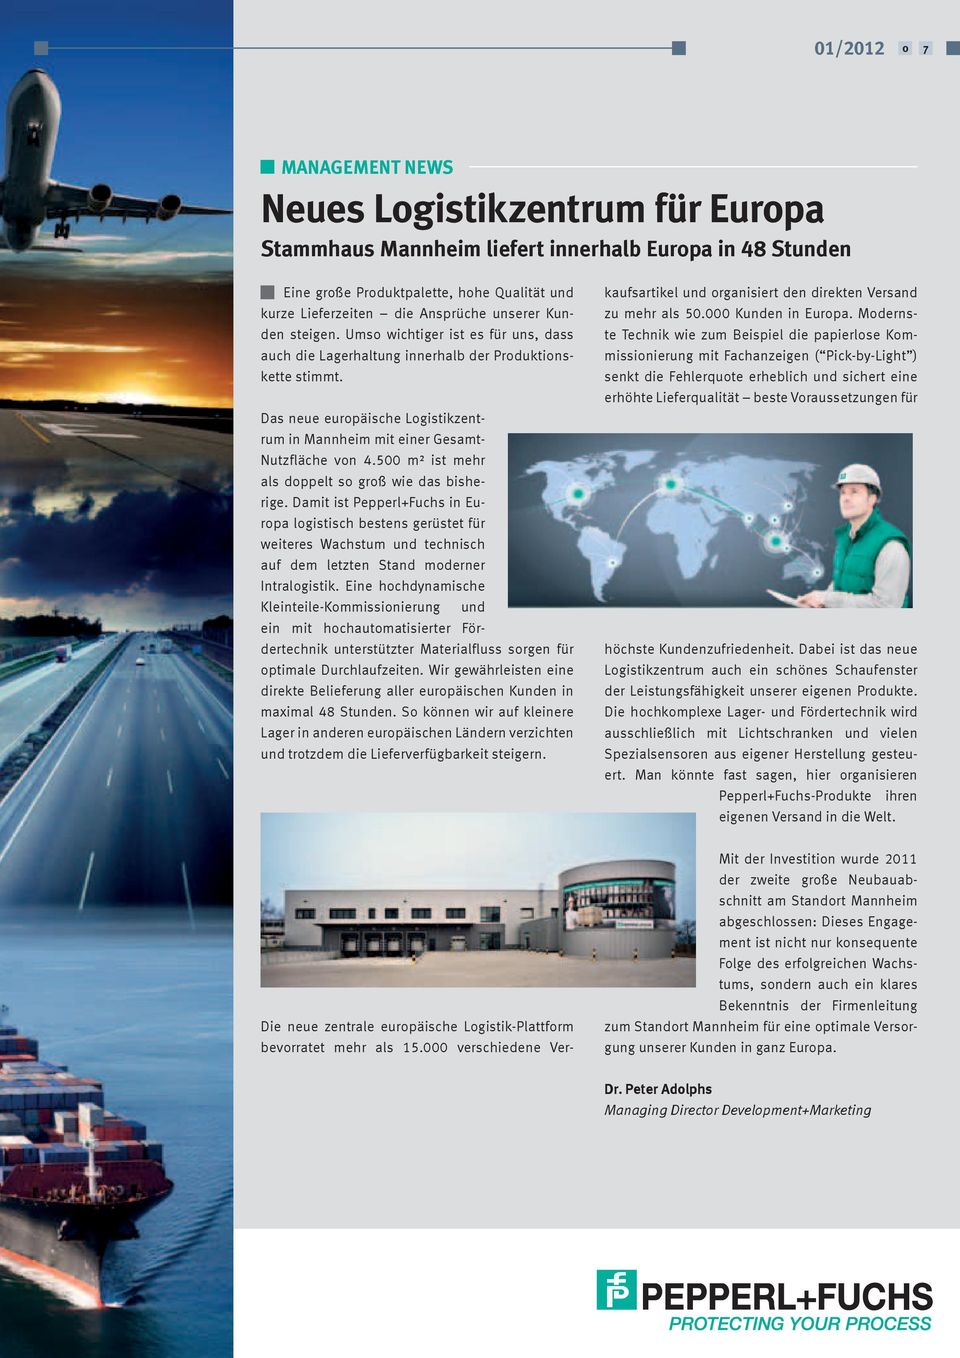 Das neue europäische Logistikzentrum in Mannheim mit einer Gesamt- Nutzfläche von 4.500 m² ist mehr als doppelt so groß wie das bisherige.